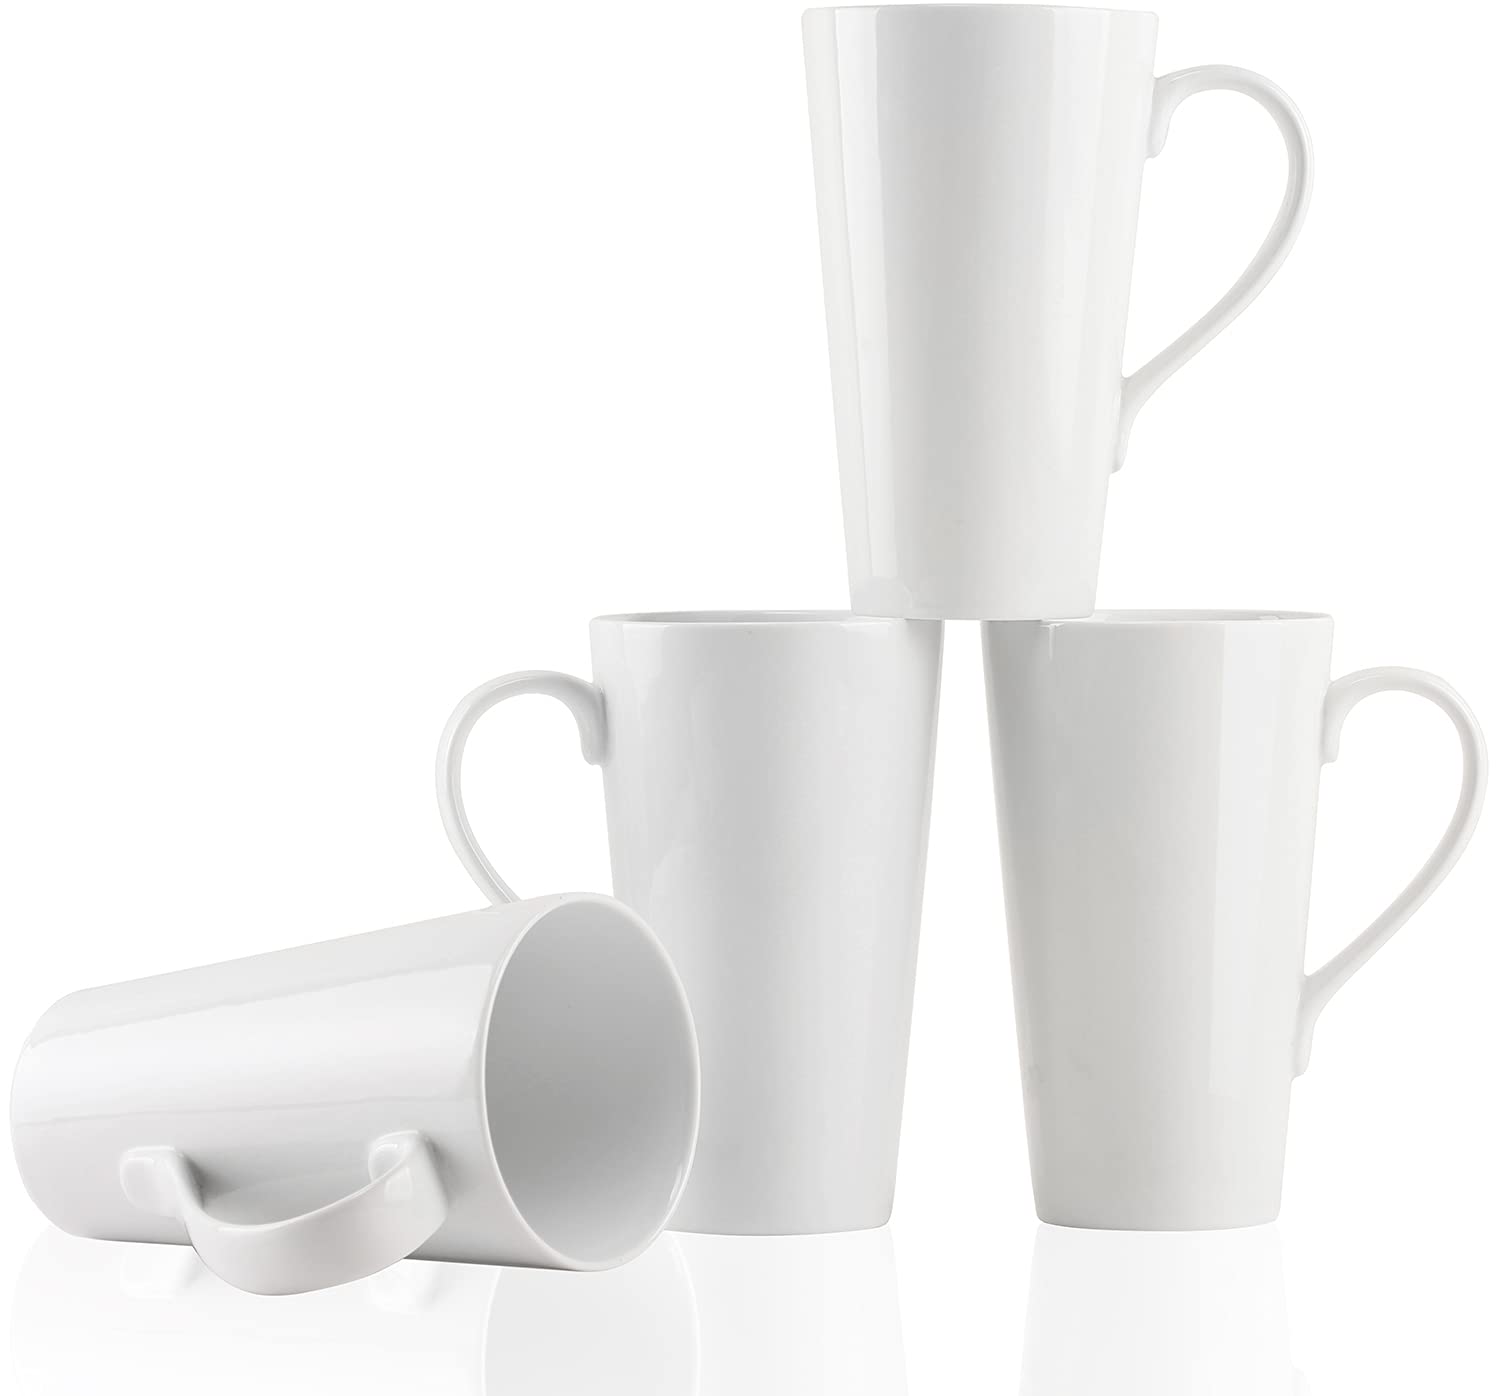 Buyajuju Large Coffee Mugs Set